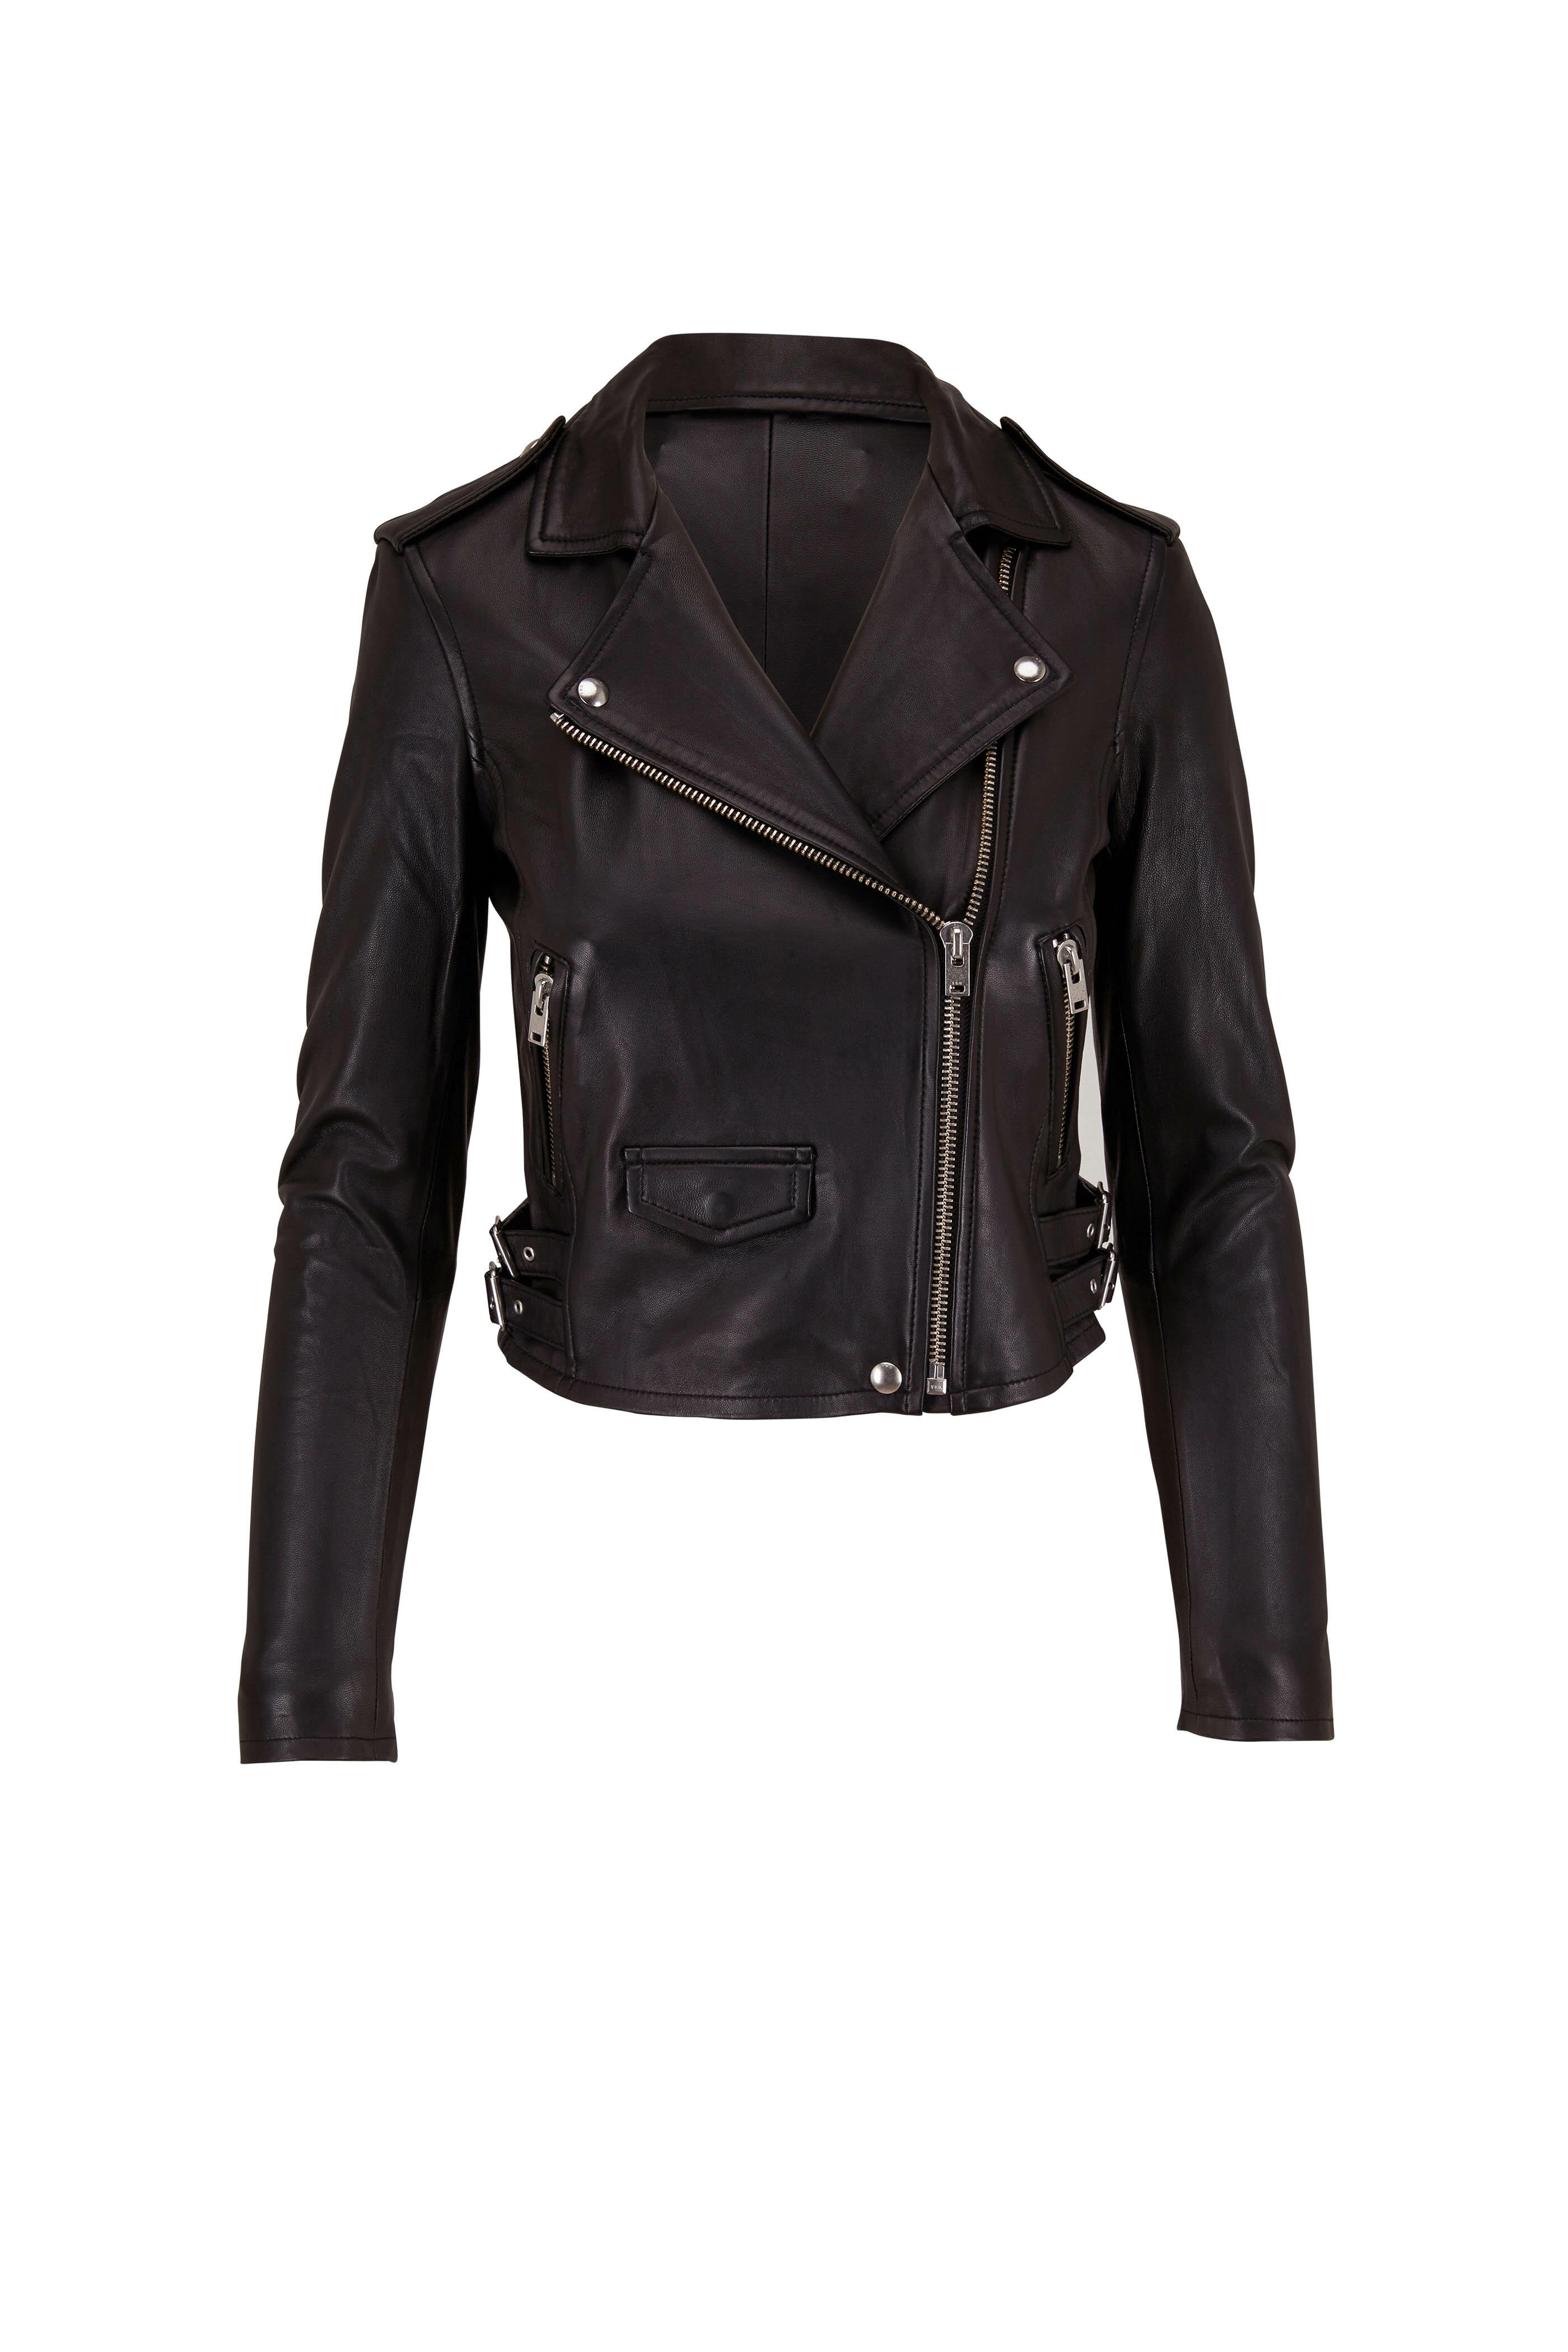 Something About You Faux Leather Moto Jacket - White, Fashion Nova, Jackets  & Coats